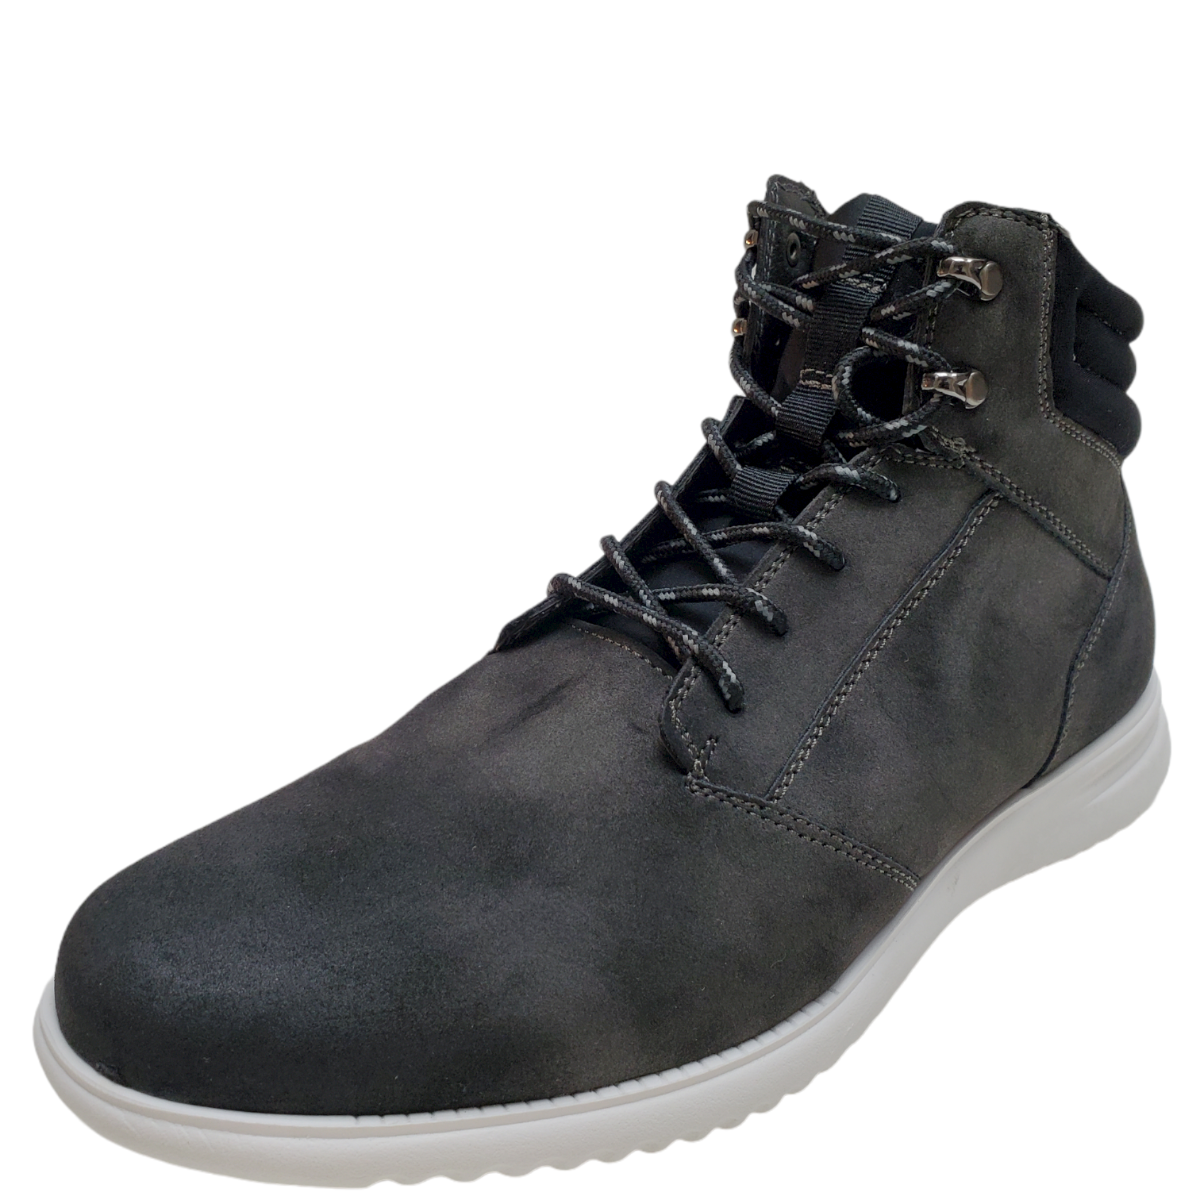 Alfani Men's Vincent Lace-Up Leather Utility Boots Black 8 M